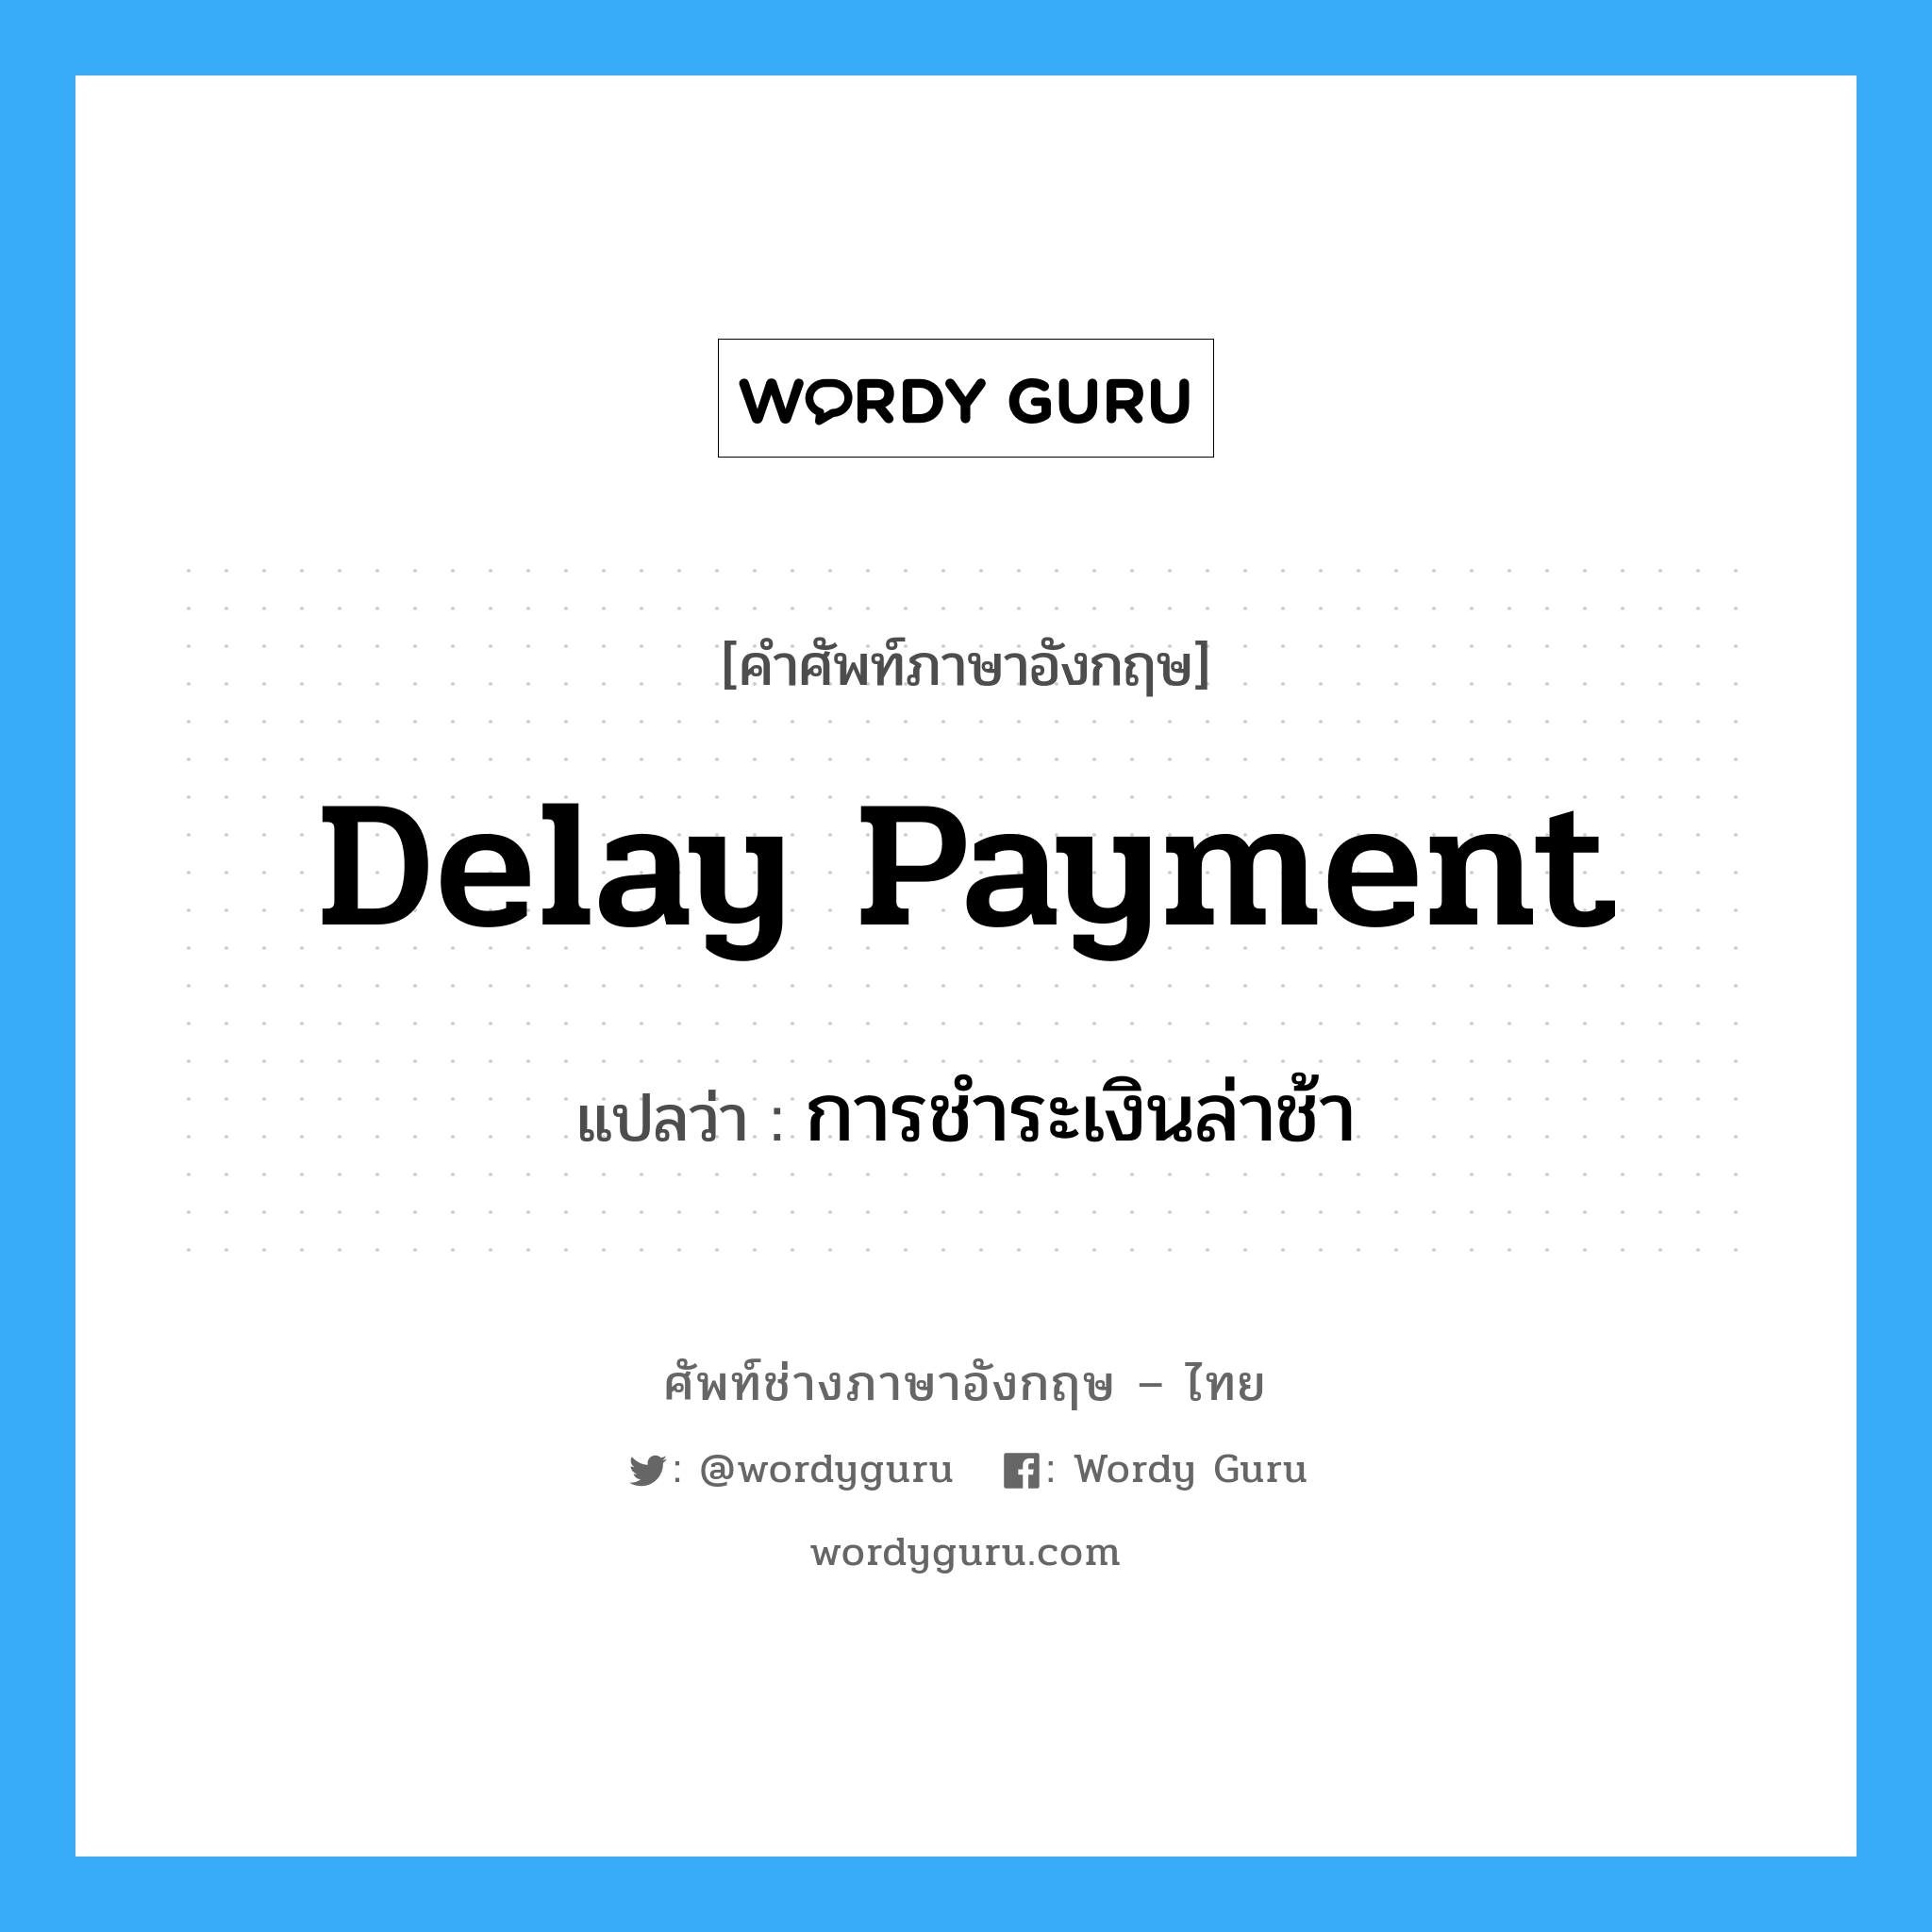 การชำระเงินล่าช้า ภาษาอังกฤษ?, คำศัพท์ช่างภาษาอังกฤษ - ไทย การชำระเงินล่าช้า คำศัพท์ภาษาอังกฤษ การชำระเงินล่าช้า แปลว่า delay payment